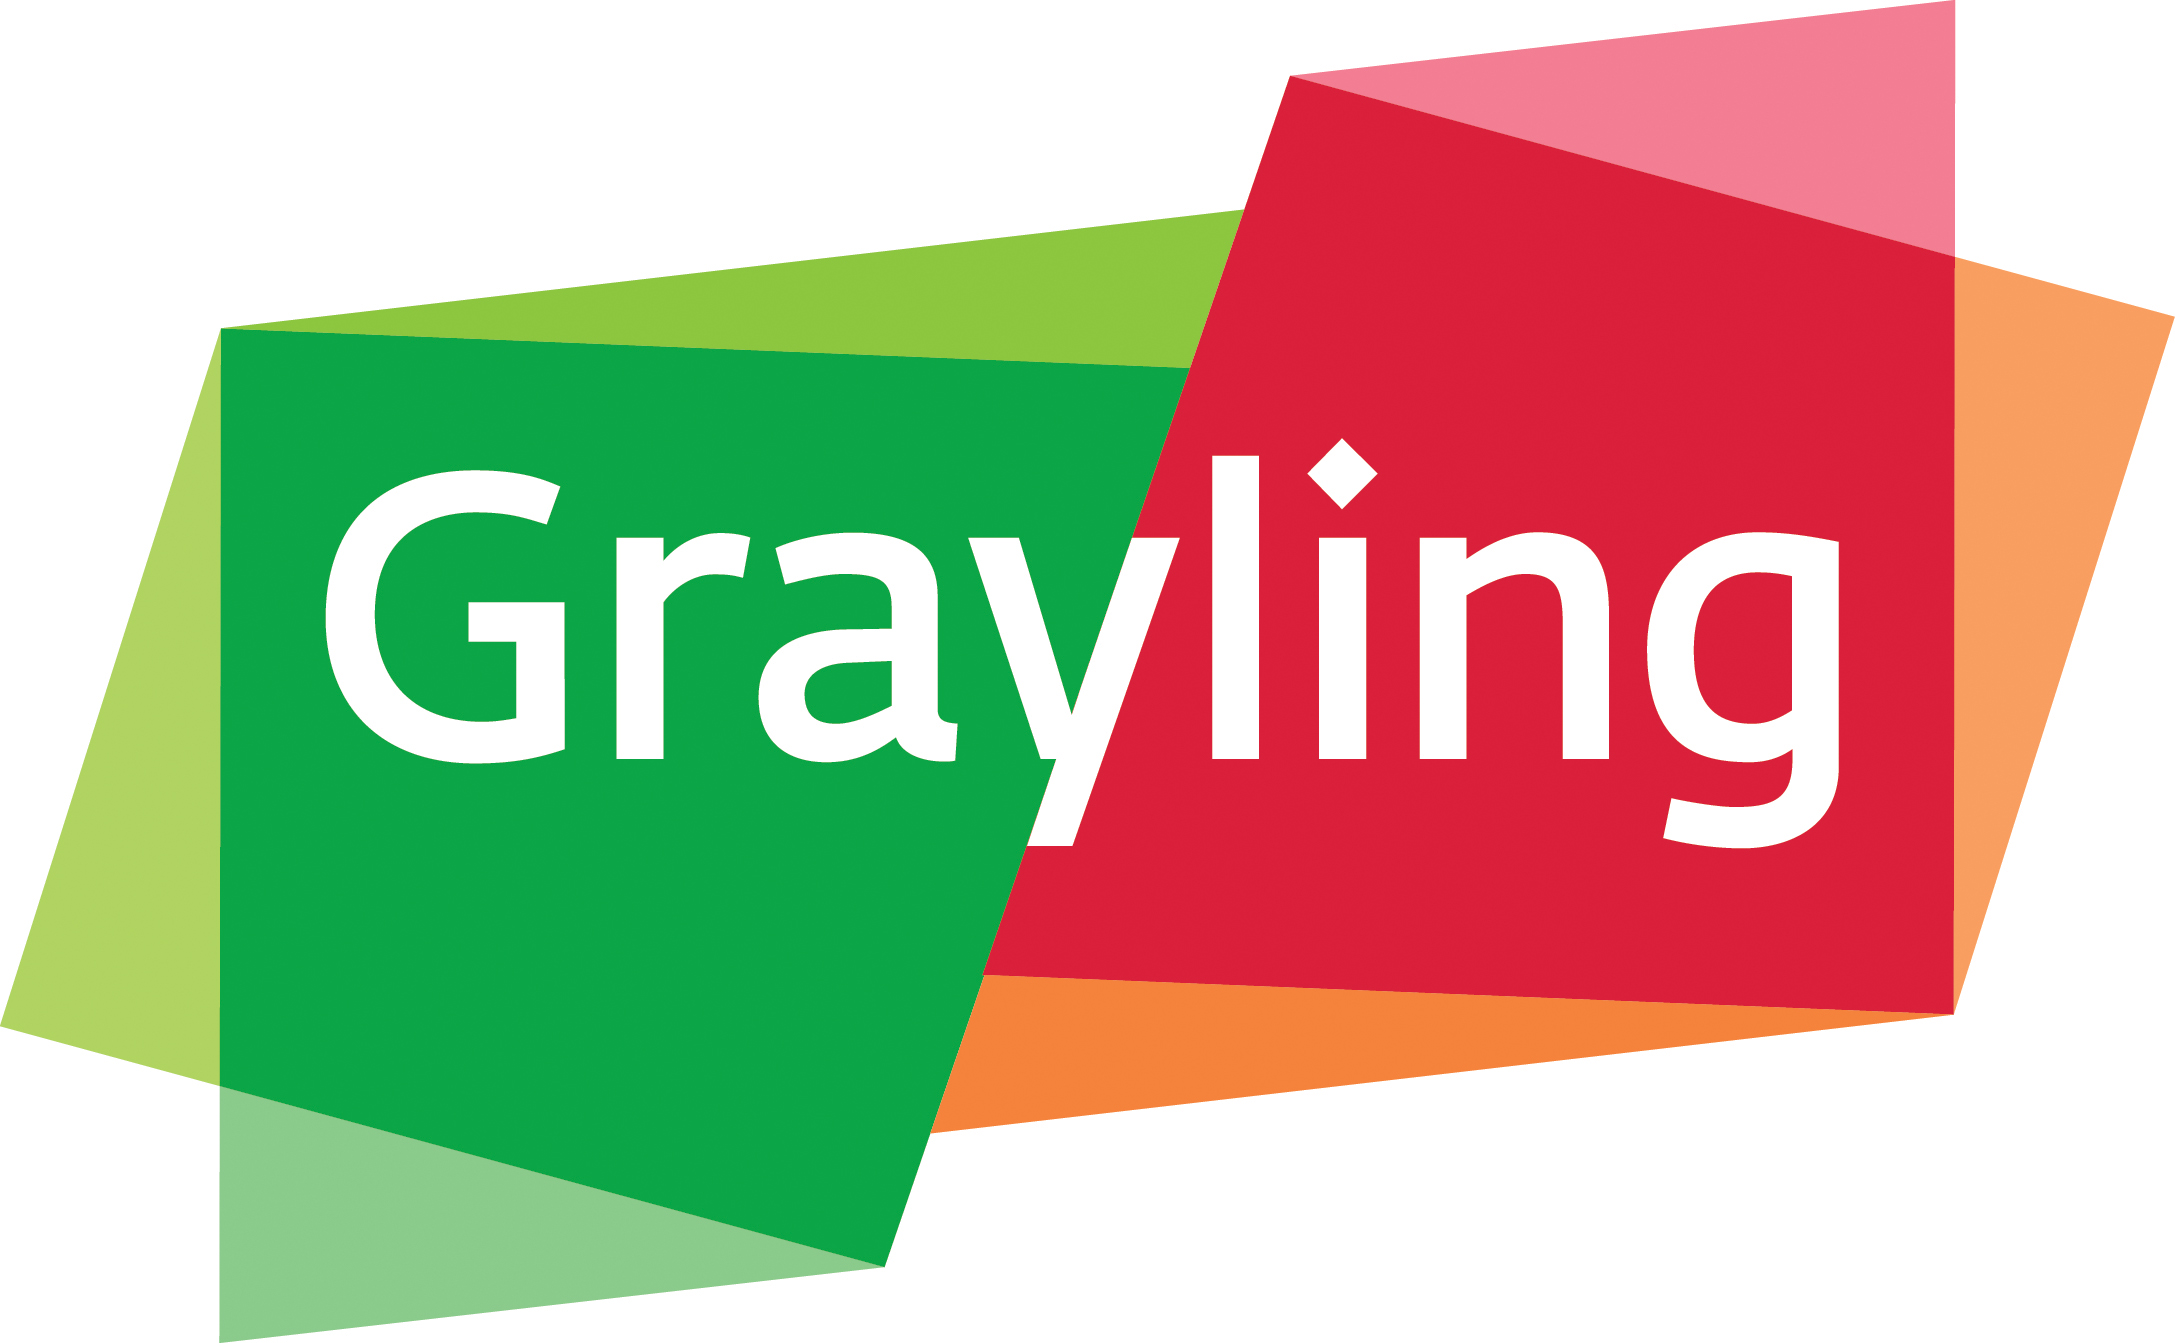  Best Public Relations Agency Logo: Grayling